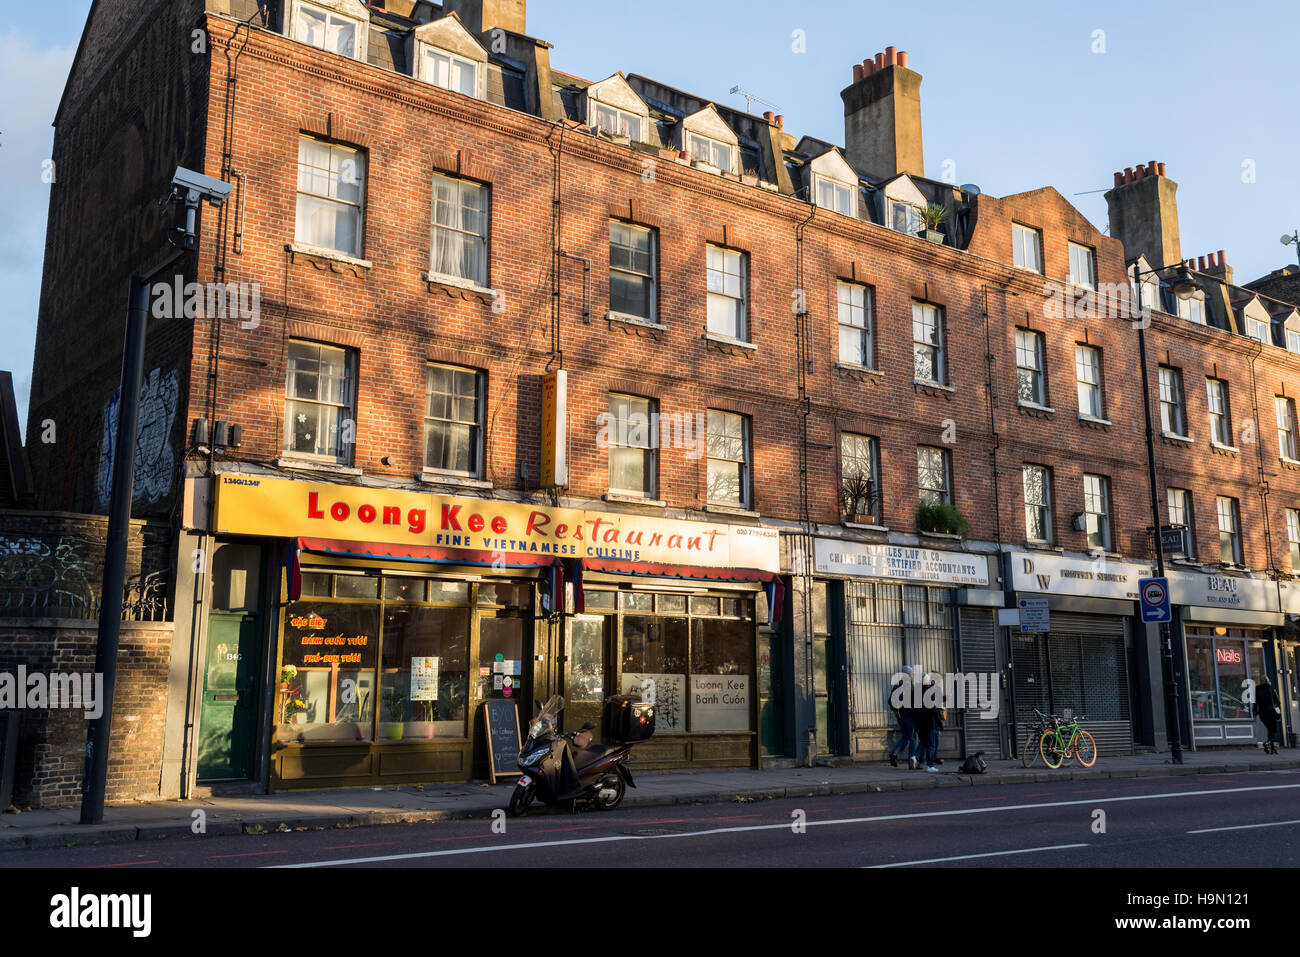 Loong Kee est la plus septentrionale d'une incroyable série de cafés vietnamiens sur Kingsland Road, Bethnal Green, Londres. Banque D'Images